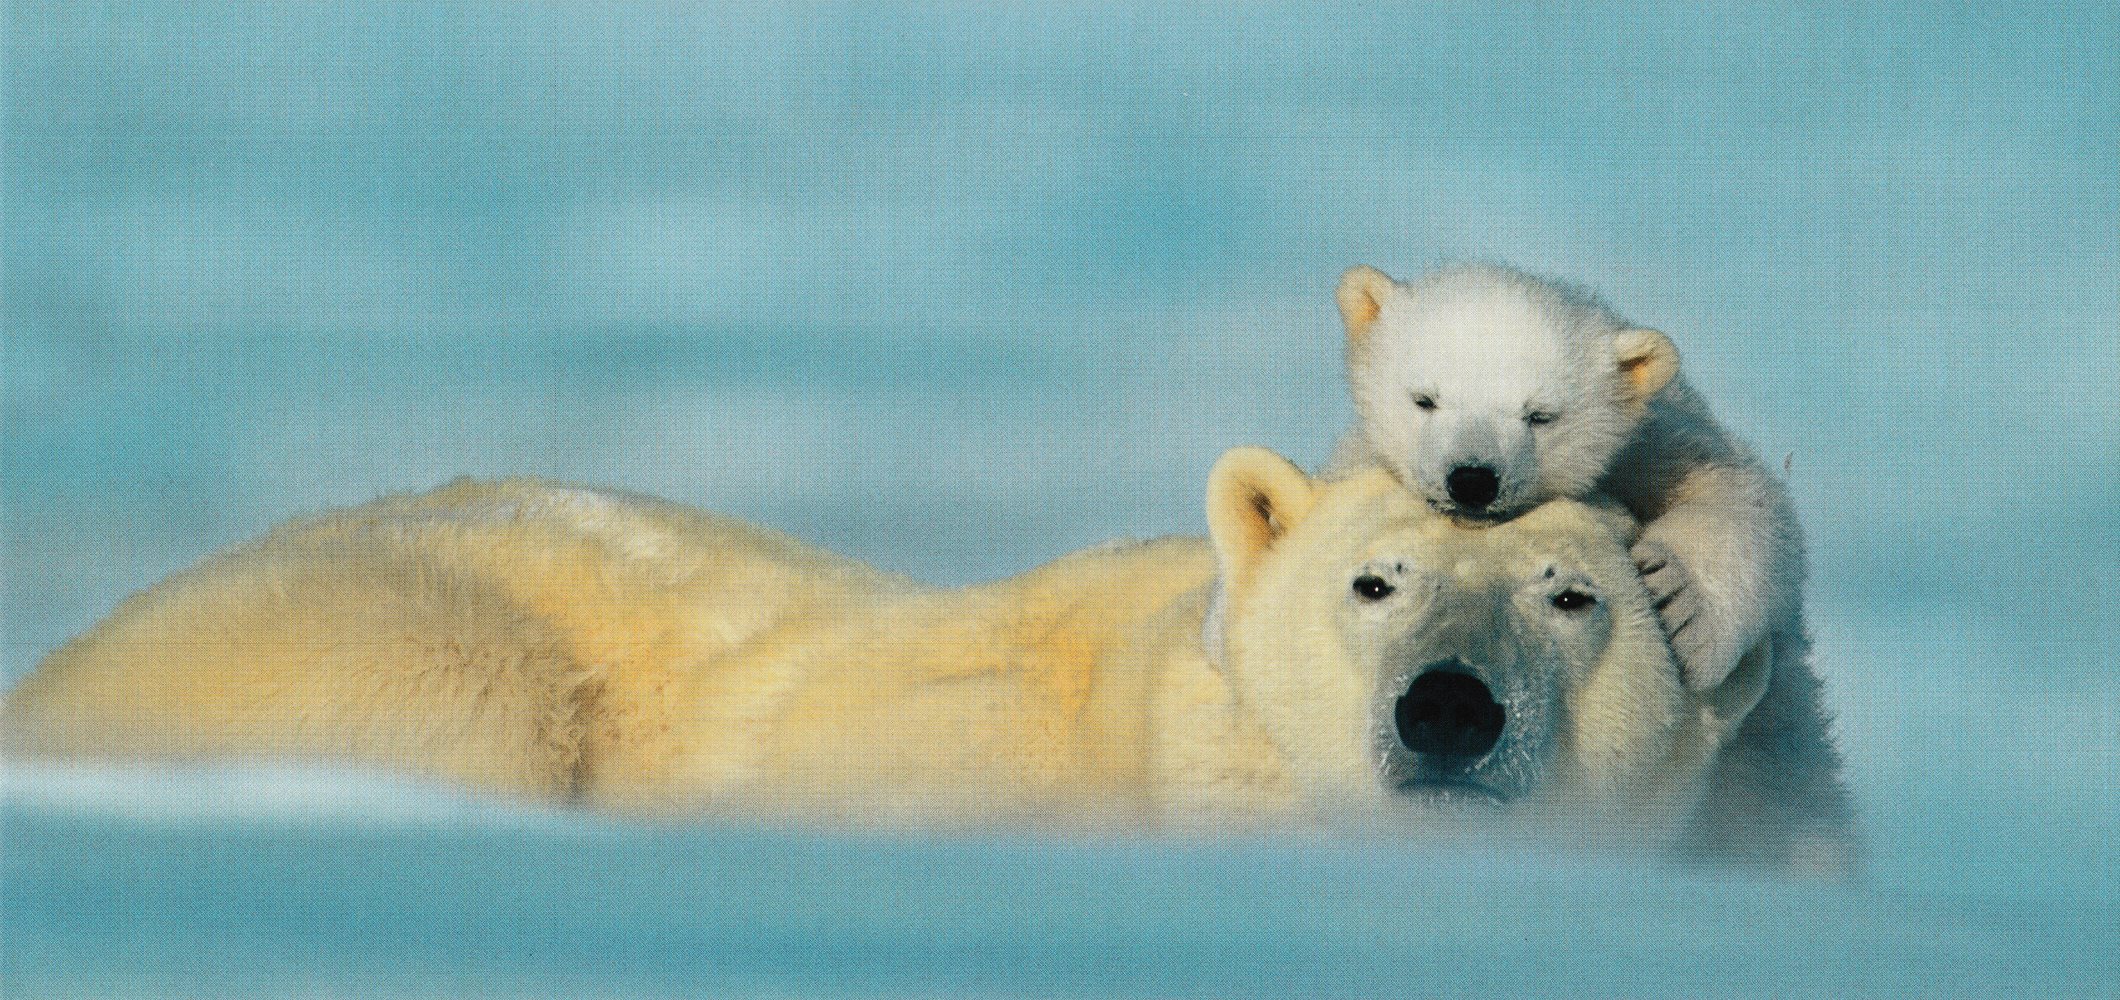 XXL-Postkarte GEO-Edition "Eisbärenmutter und Junges"